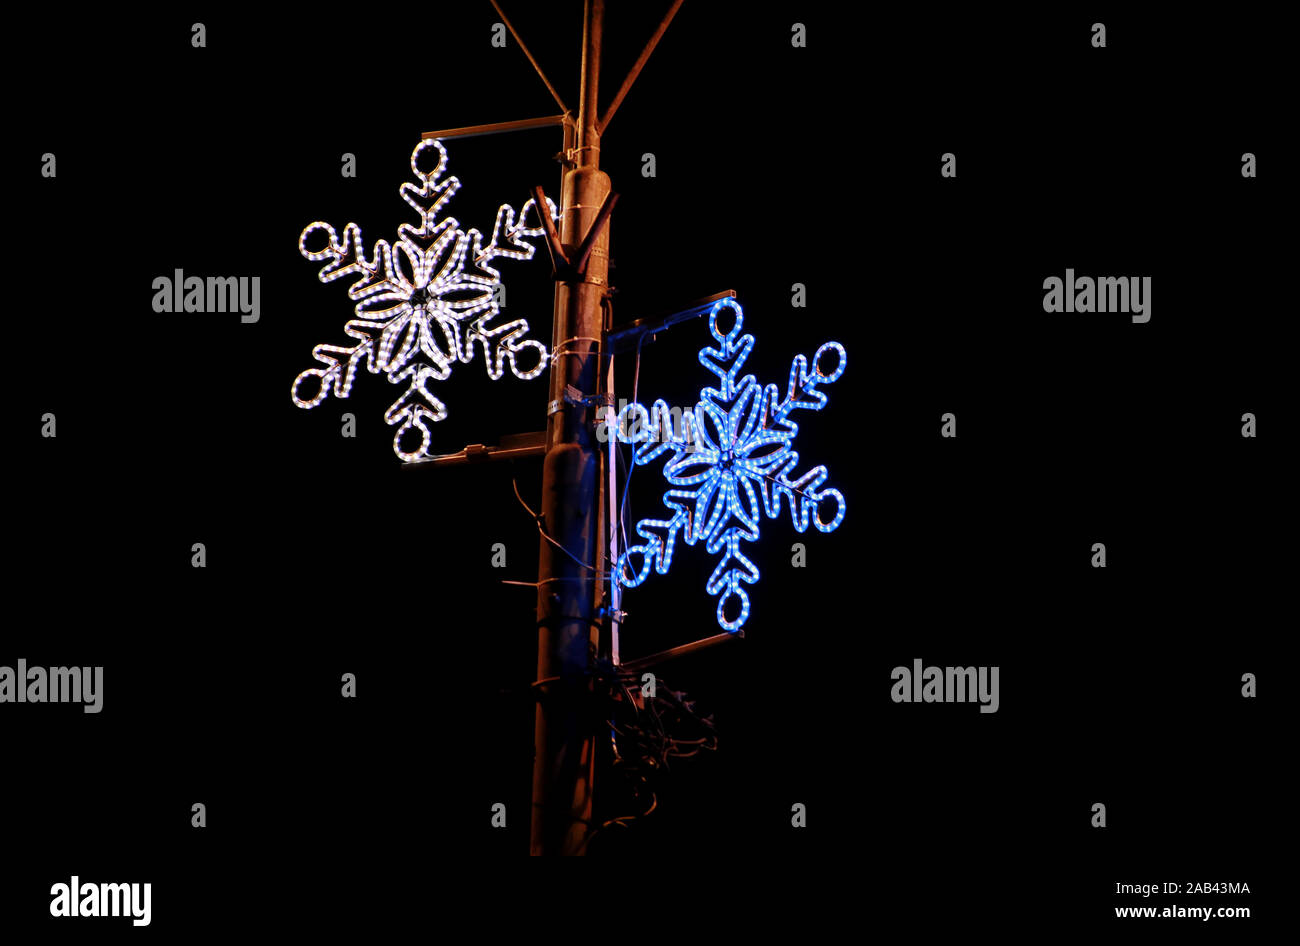 Weihnachten blau und weiße Lichter Simulation Form von gefrorenen Schneeflocken. Straße Detail des Neuen Jahres und Weihnachtsschmuck, string Reis Glühlampen. Stockfoto